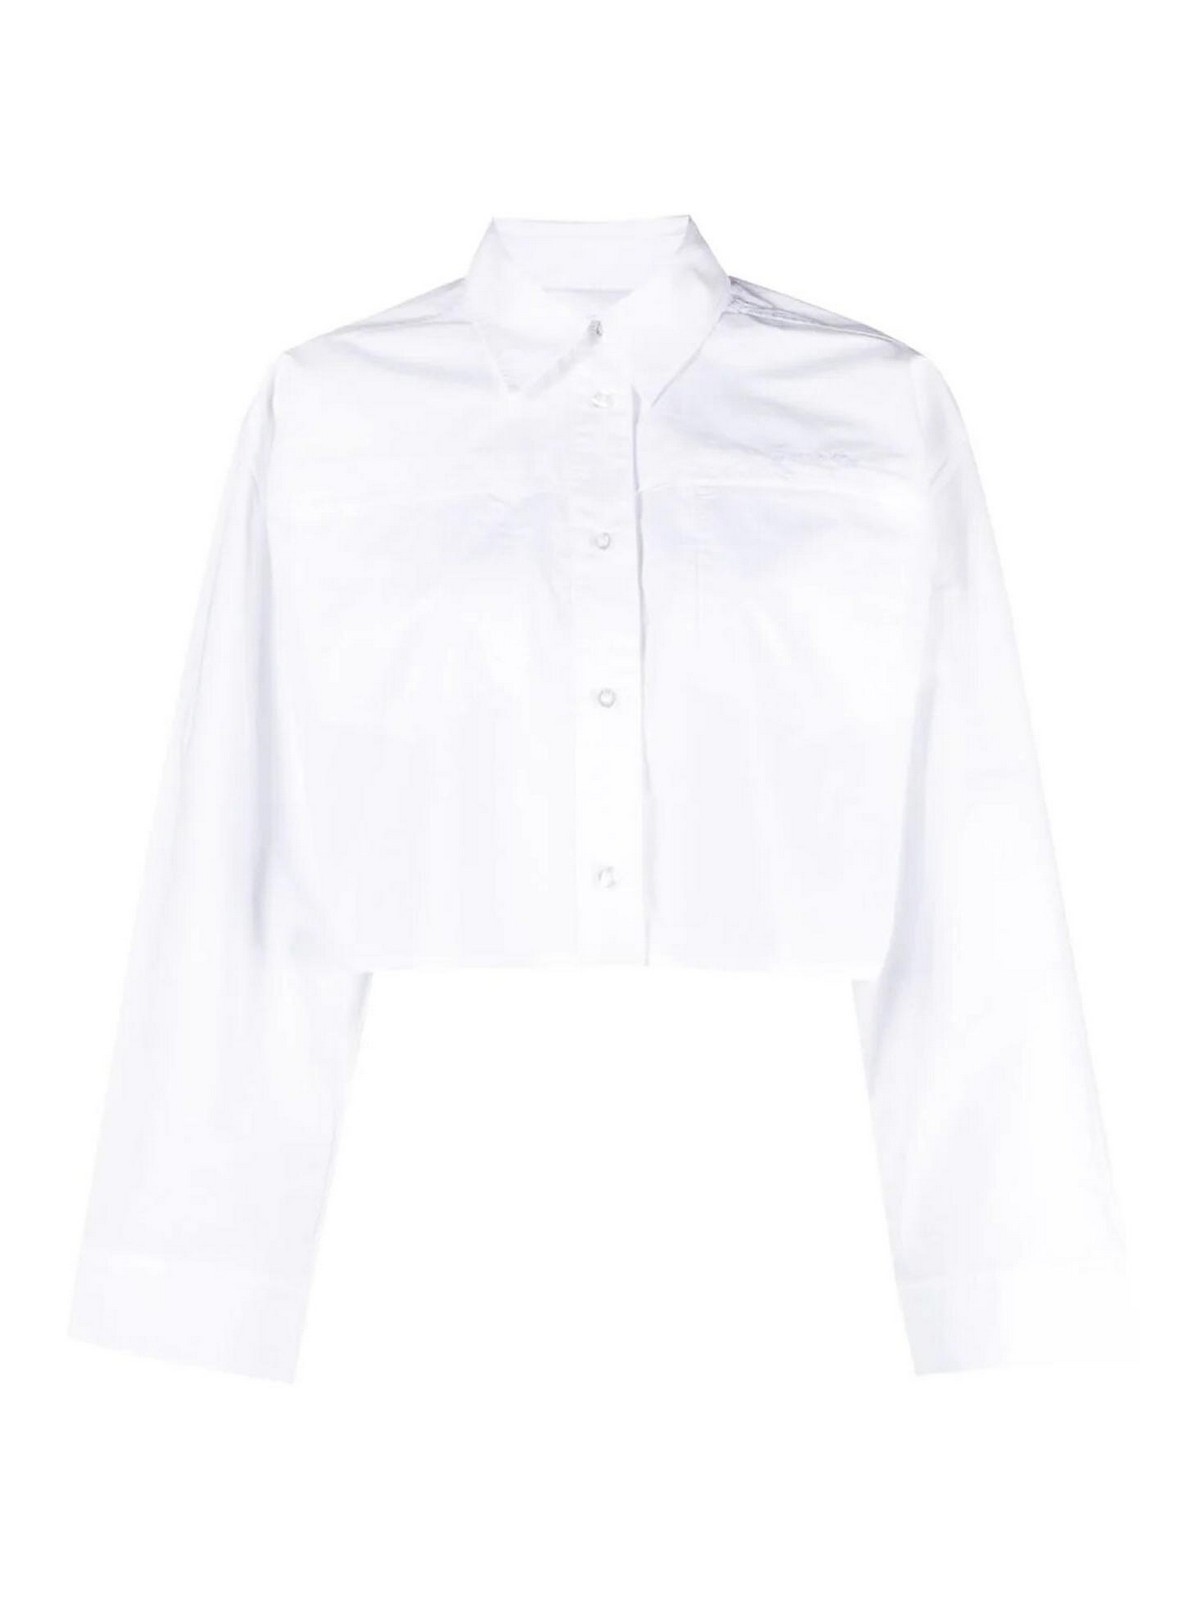 Remain Birger Christensen White Cropped Shirt